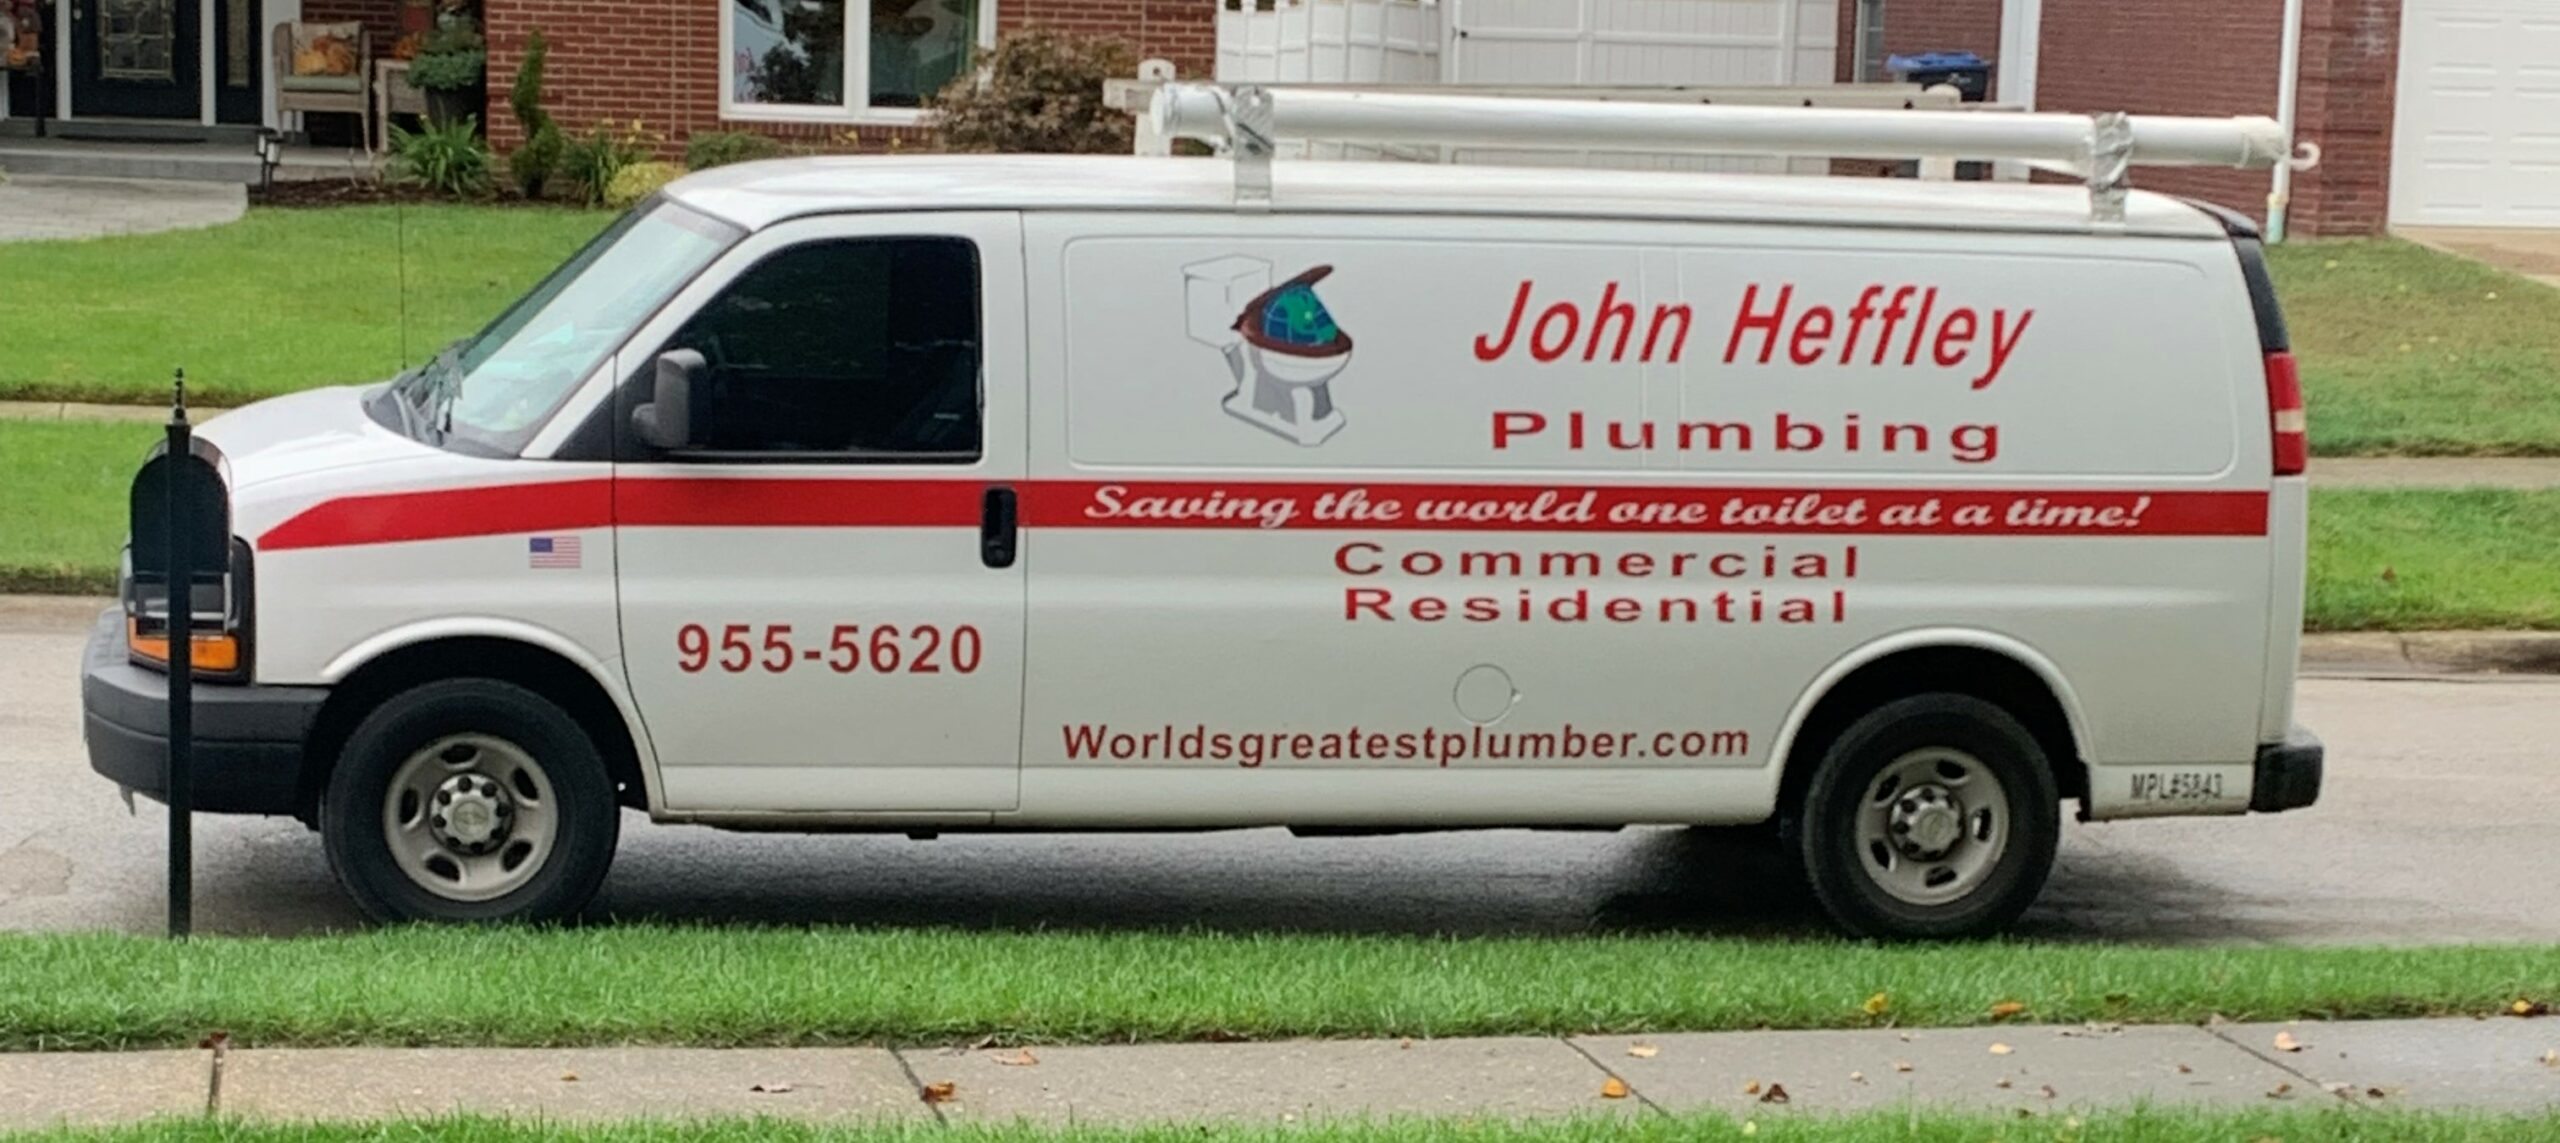 John Heffley Plumbing Van